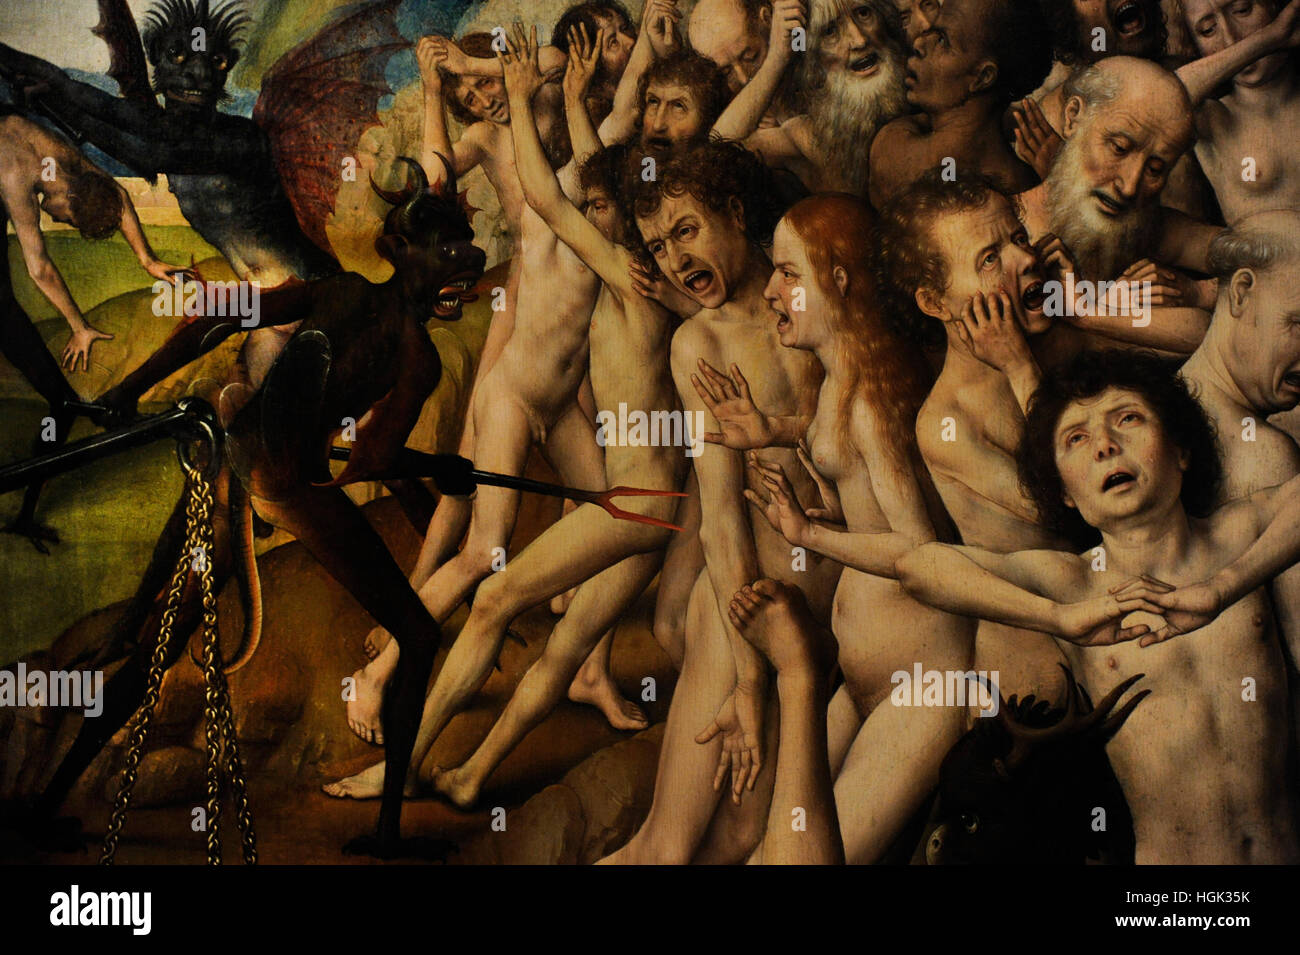 Das jüngste Gericht, späten 1460. Triptychon von Maler Hans Memling(1430-1494). Rechten Seite. Die verdammten in die Hölle. National Museum. Danzig. Polen. Stockfoto